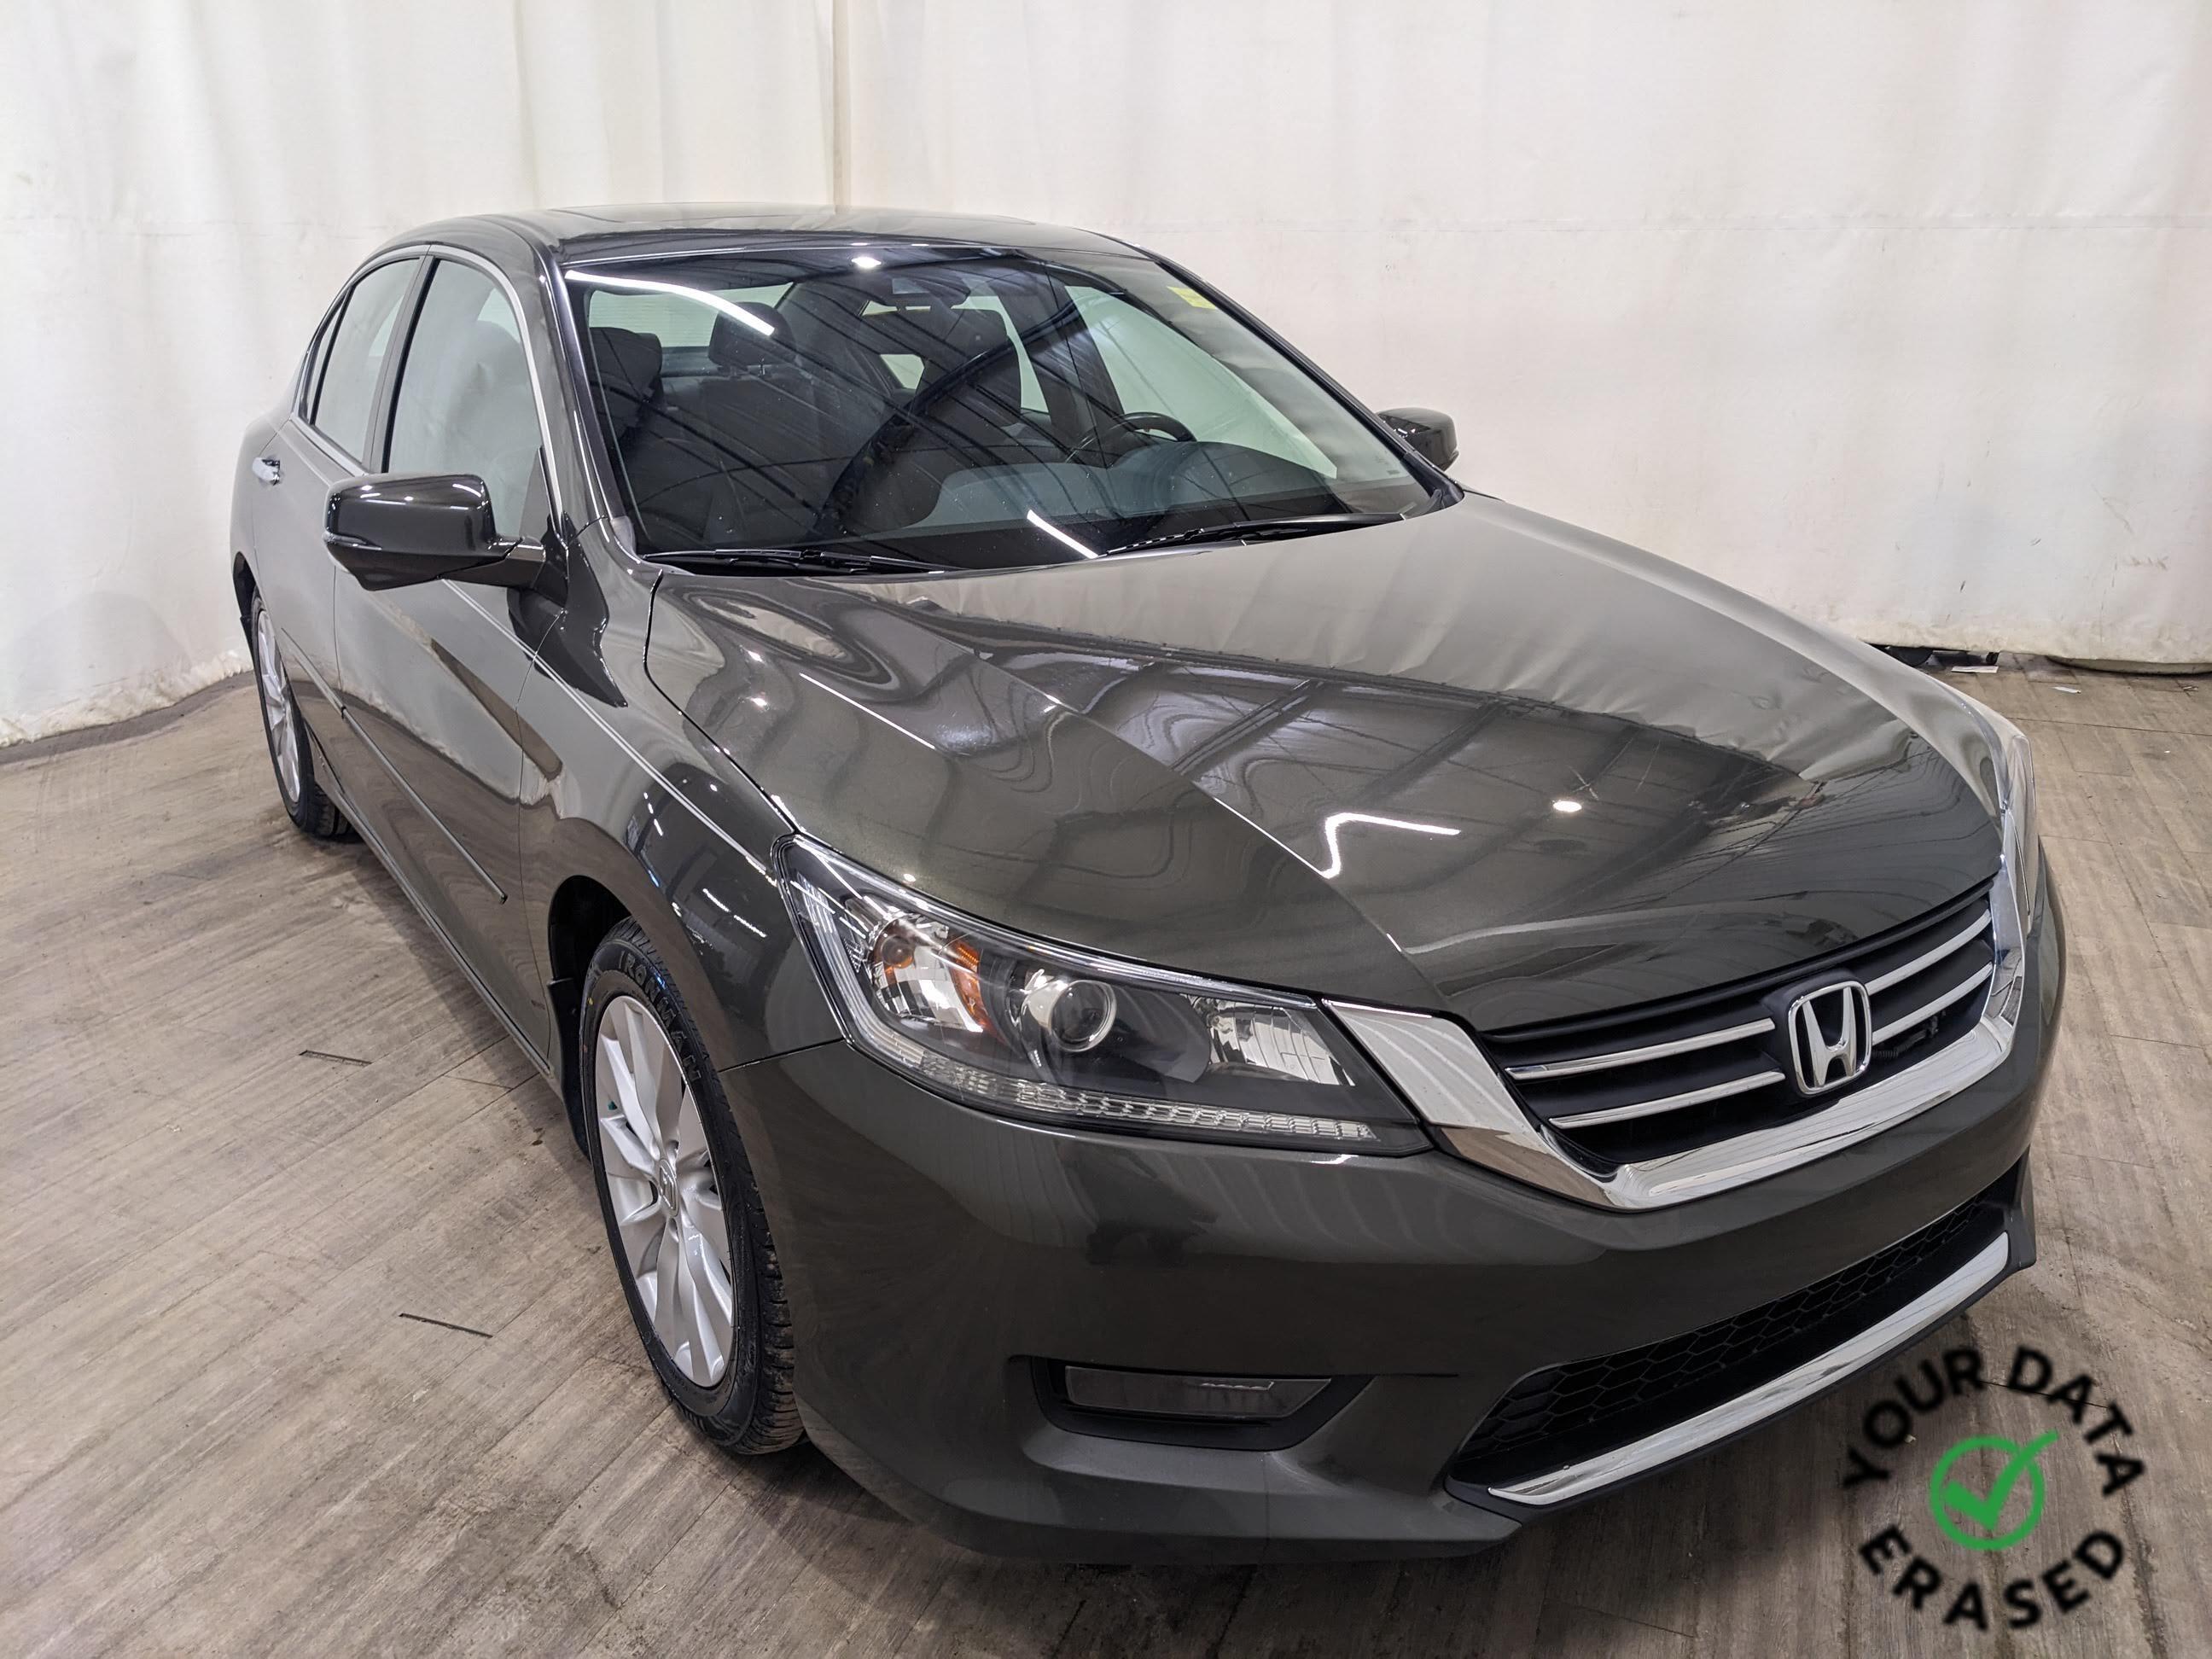 2014 Honda Accord Sedan EX-L | Leather | Bluetooth | Heated Seats